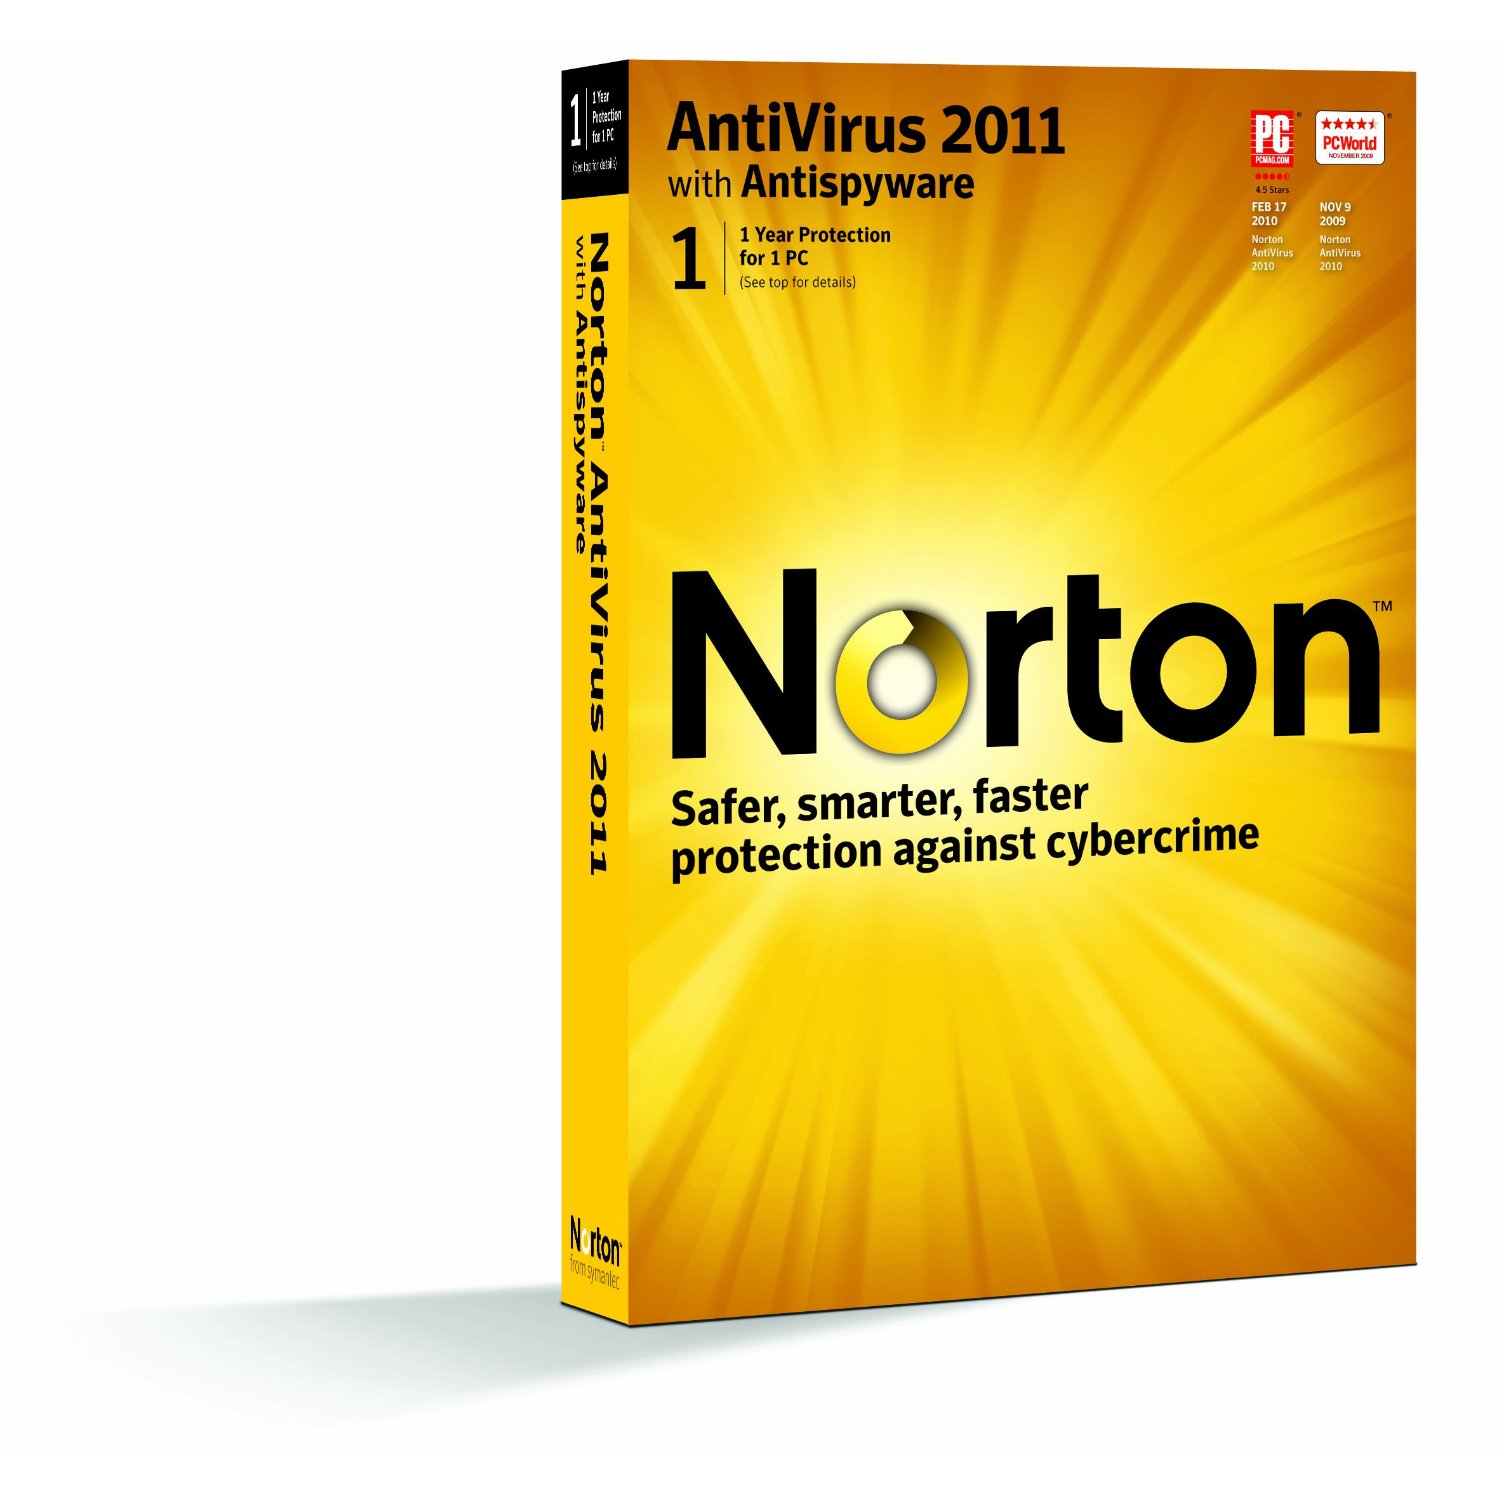 Antivirus Free - Download Norton Antivirus Free Trial Software